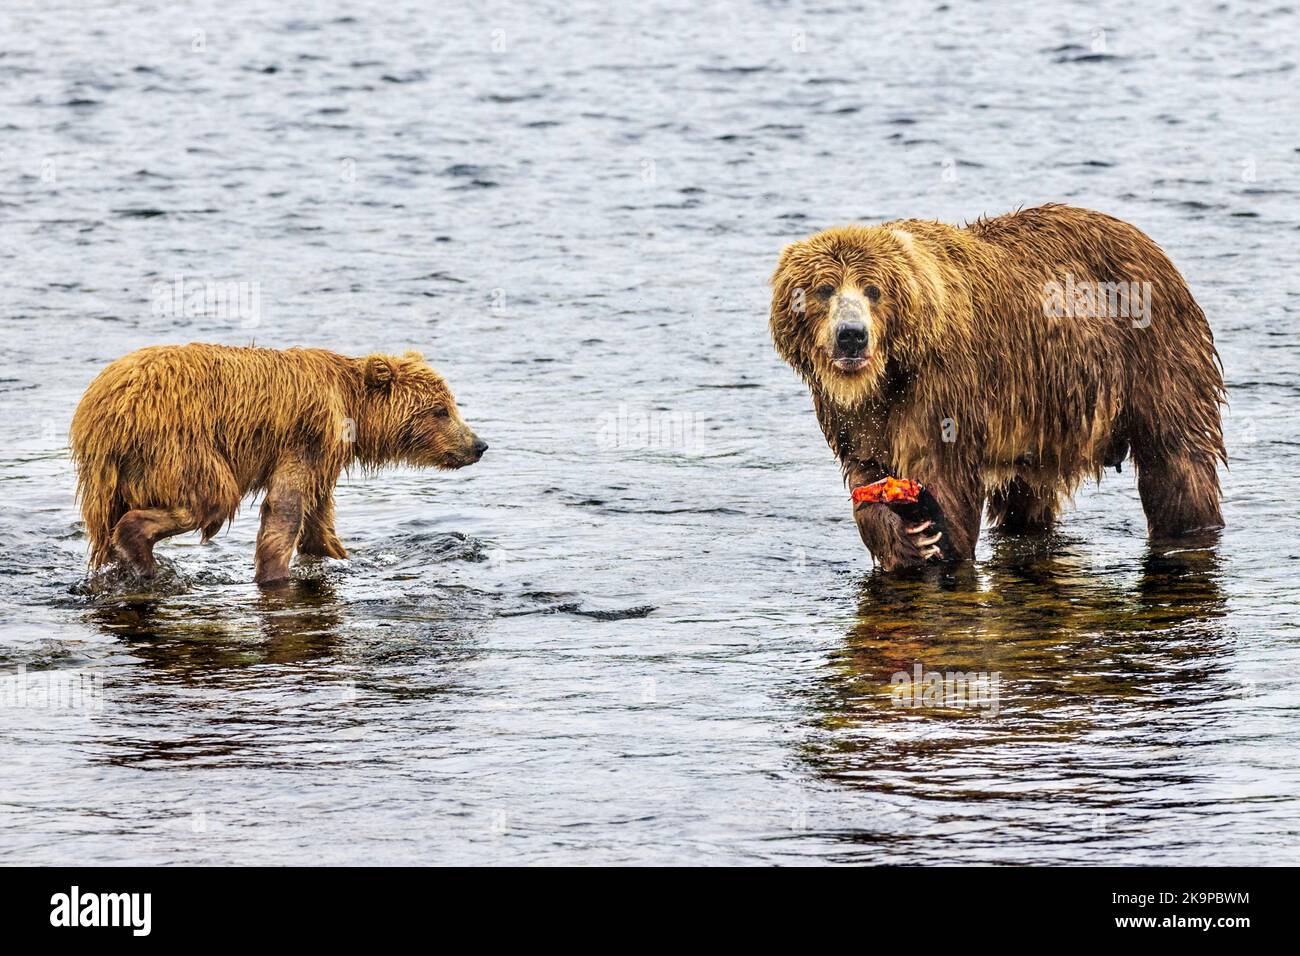 Bear cub & fish by Maria Guyda